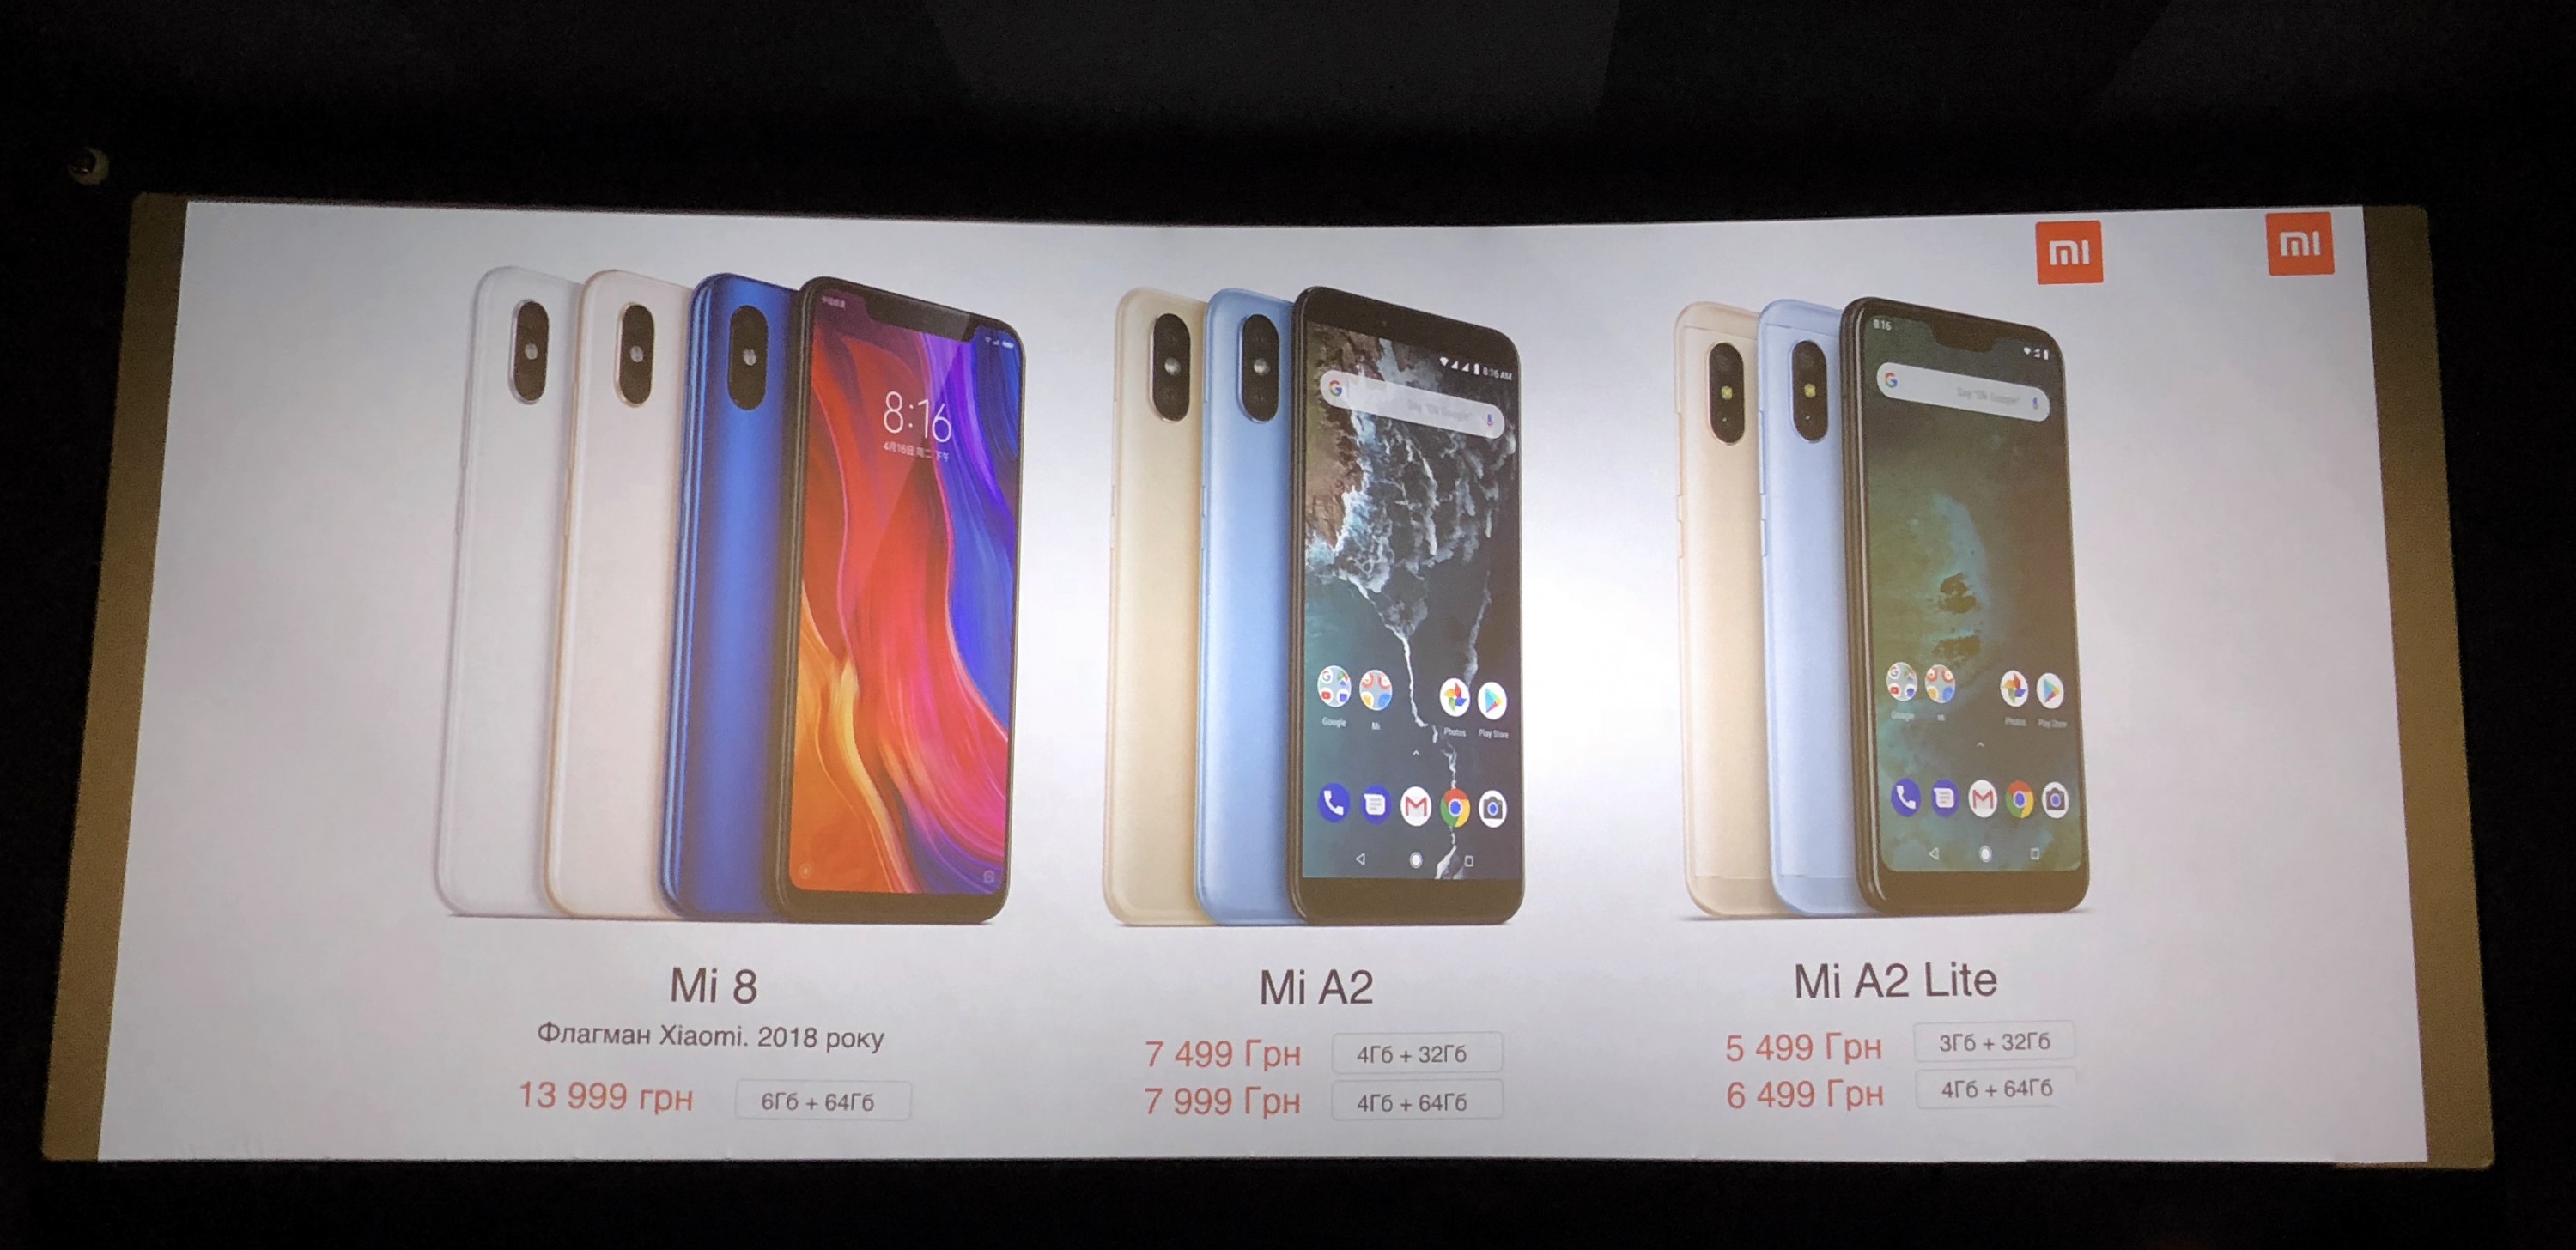 Xiaomi        Mi 8, Mi A2  Mi A2 Lite